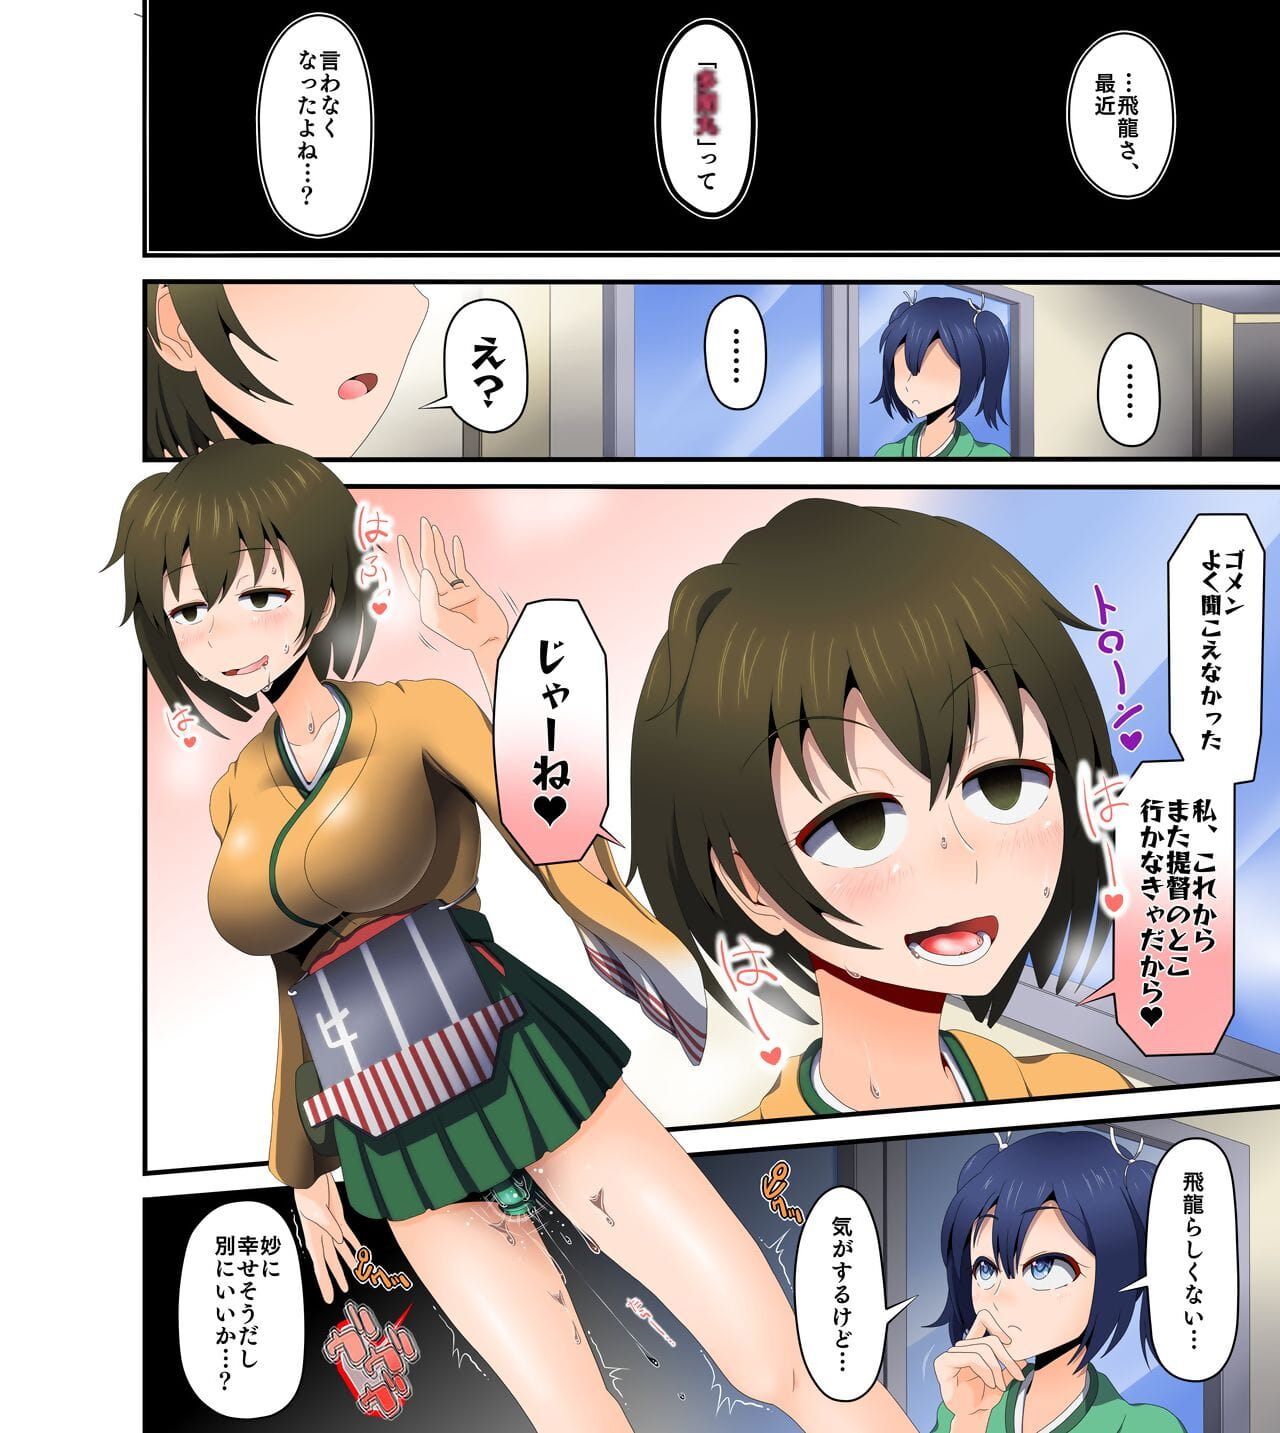 موتسوماجي waikyoku page 1